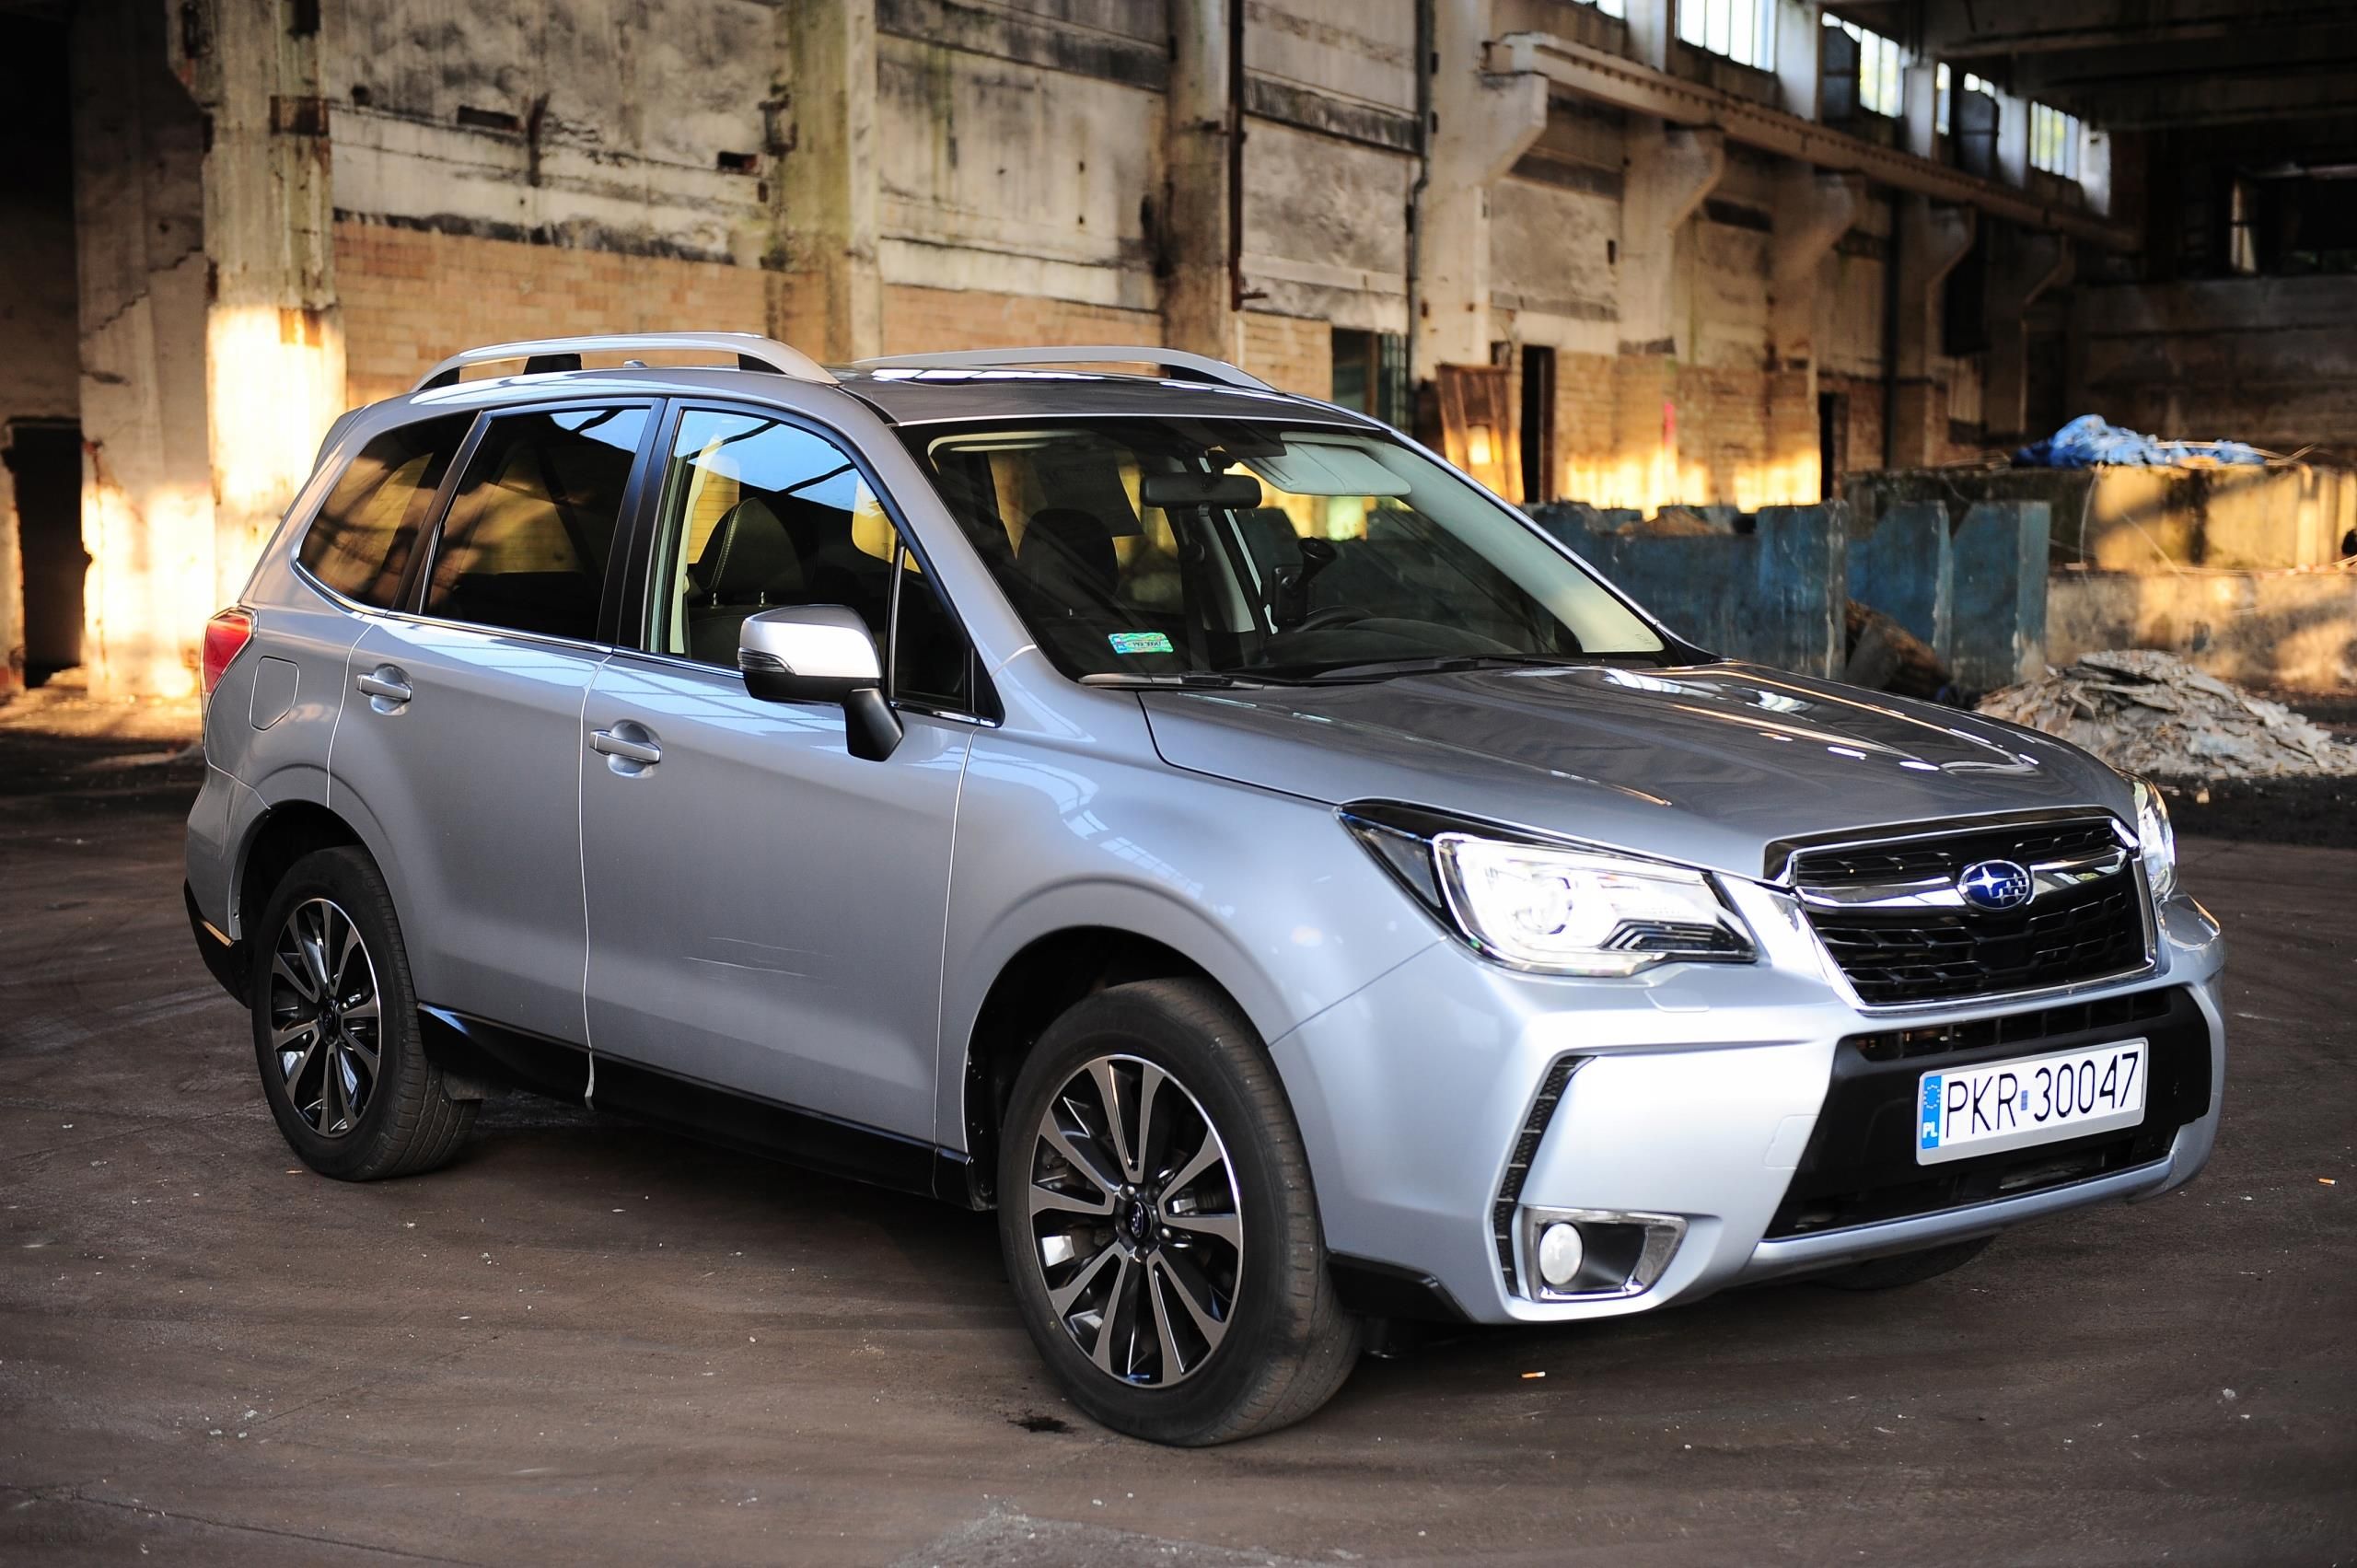 Subaru Forester 2016 Rok, Gwarancja, Serwis Aso - Opinie I Ceny Na Ceneo.pl